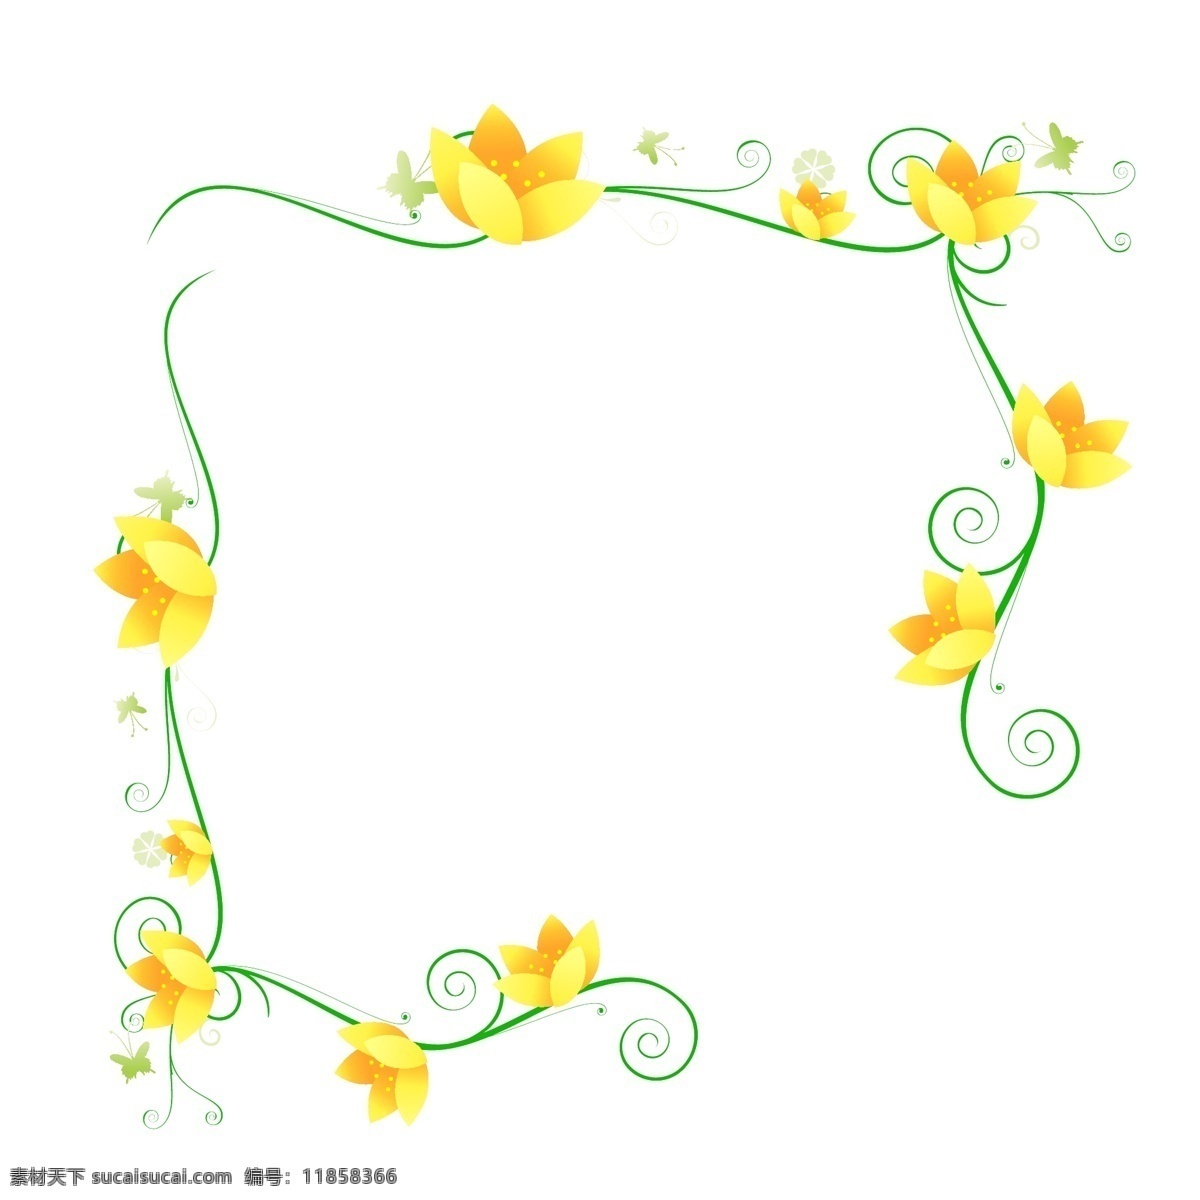 黄色 花瓣 边框 插图 绿色花藤边框 植物花藤边框 黄色花瓣 盛开的花瓣 花瓣边框 美丽的设计 卡通插画